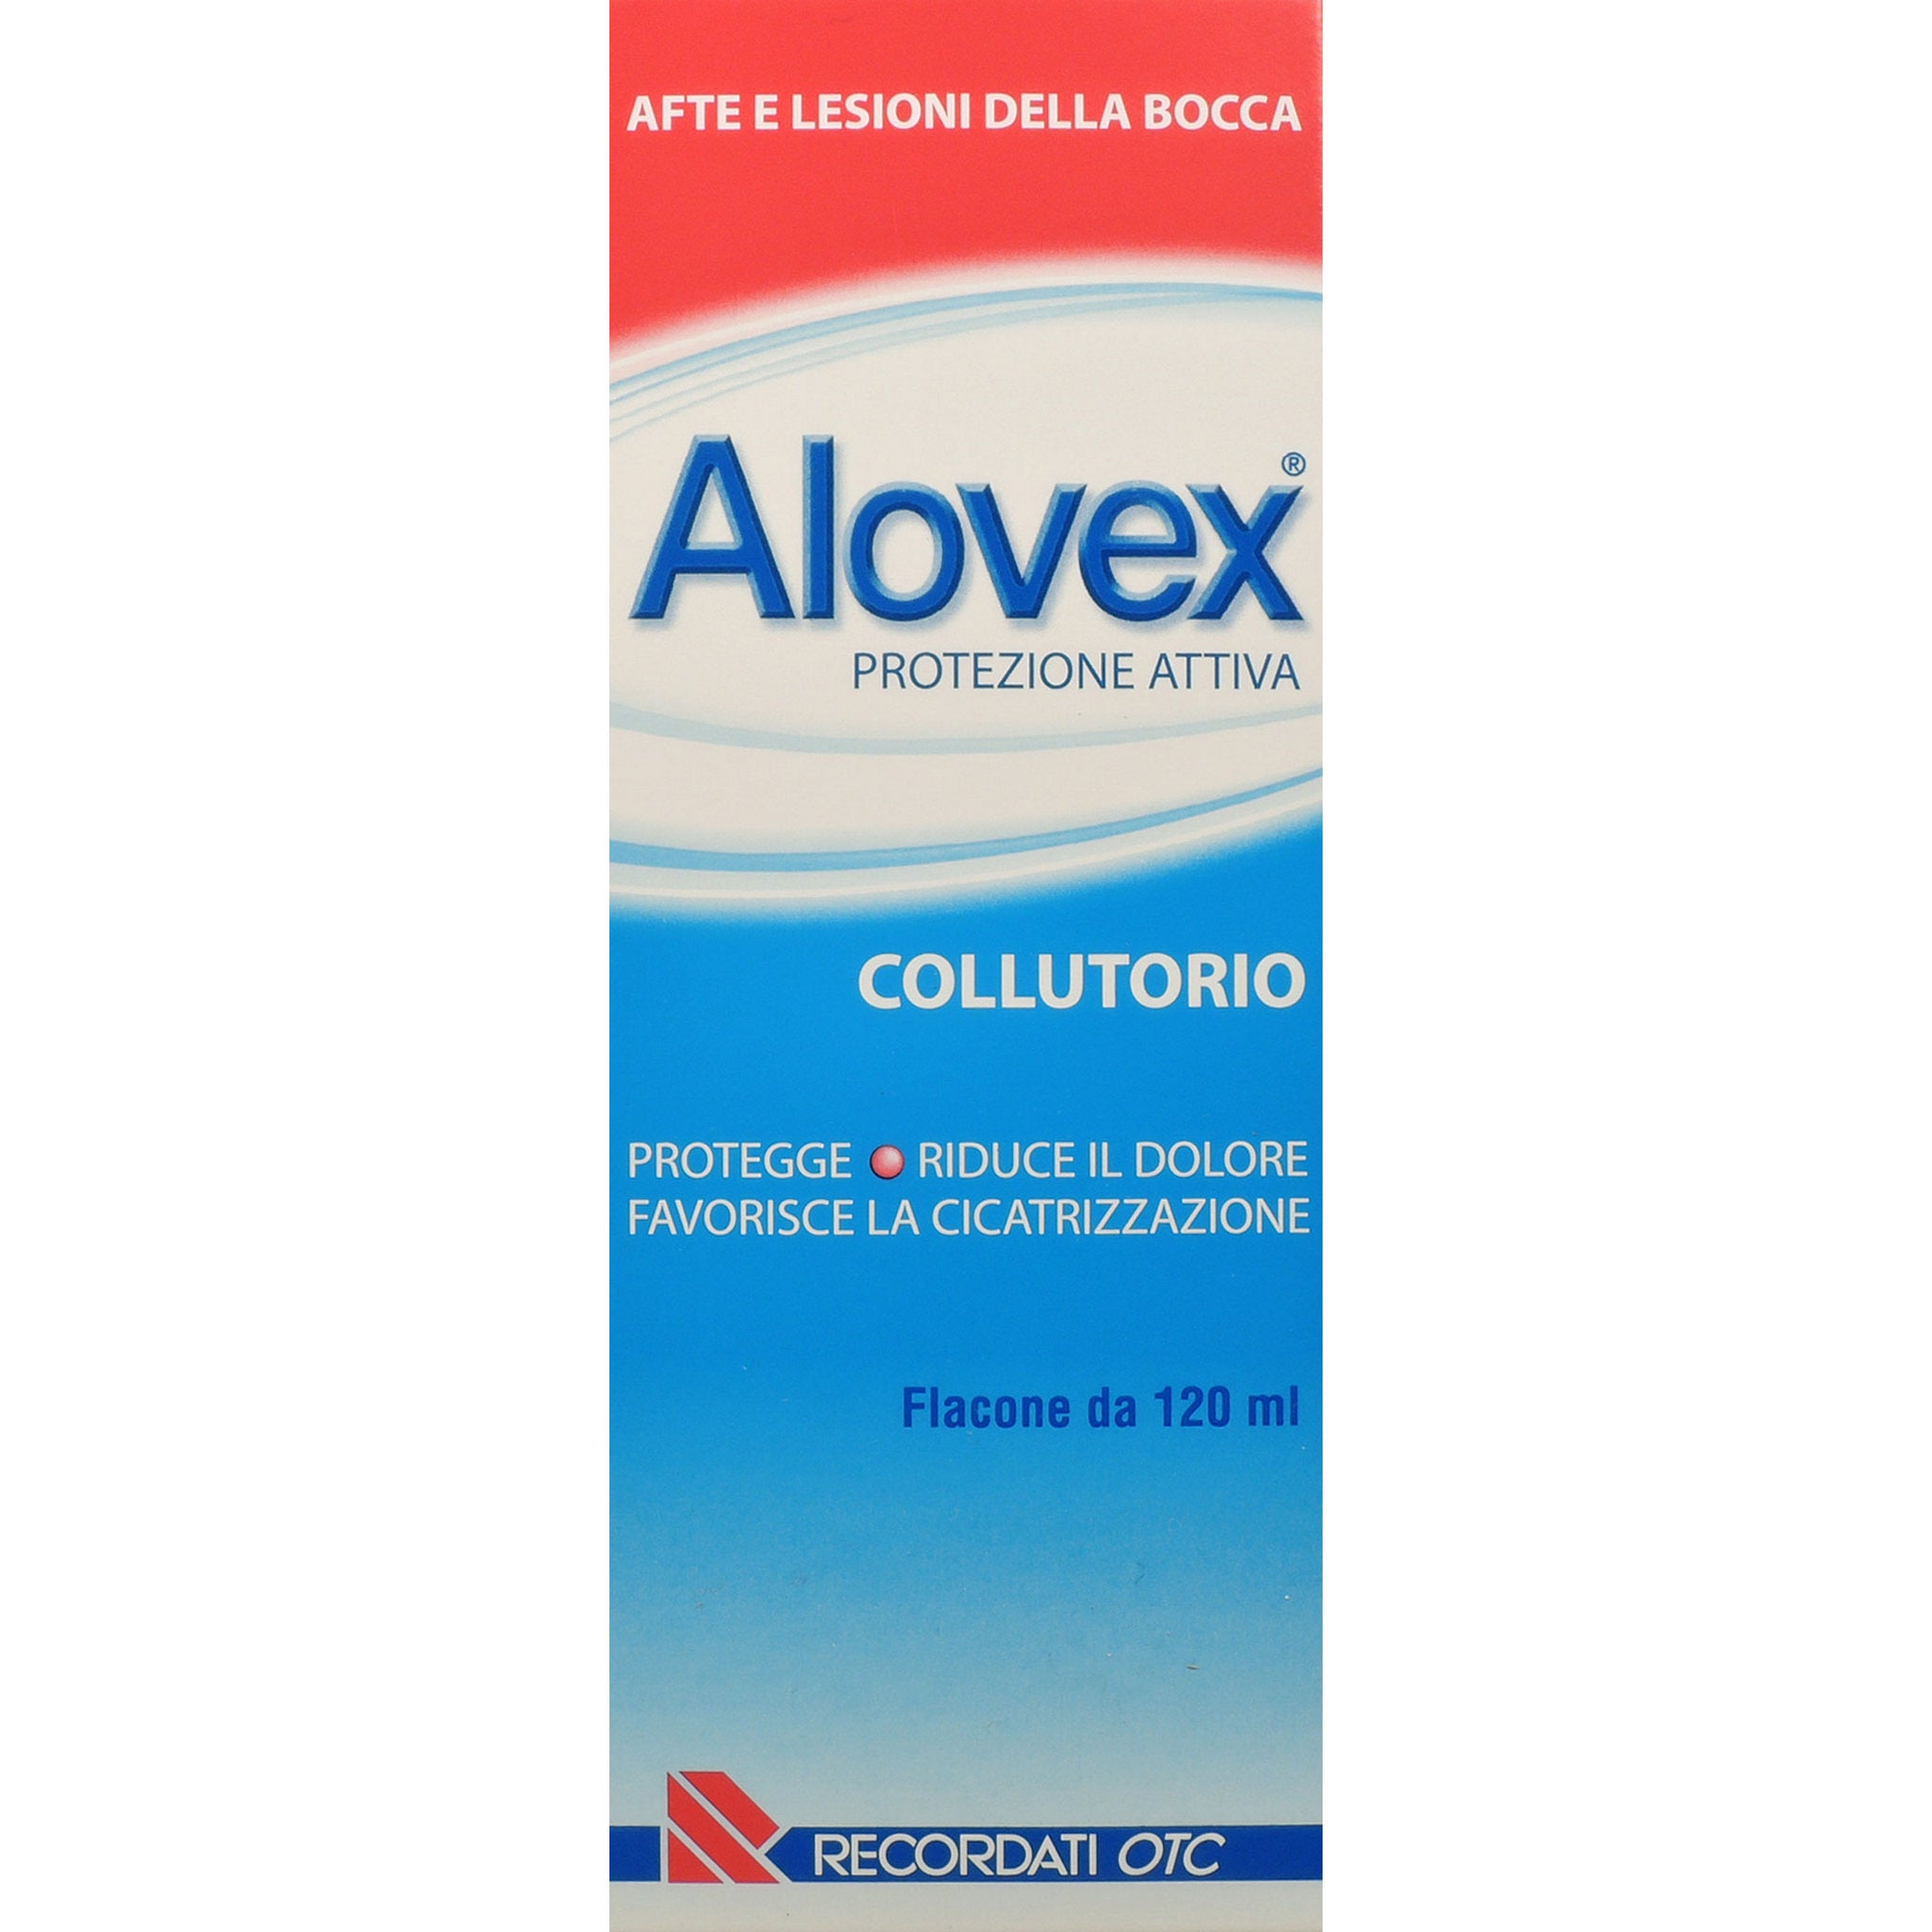 Alovex Protezione Attiva Collutorio 120ml